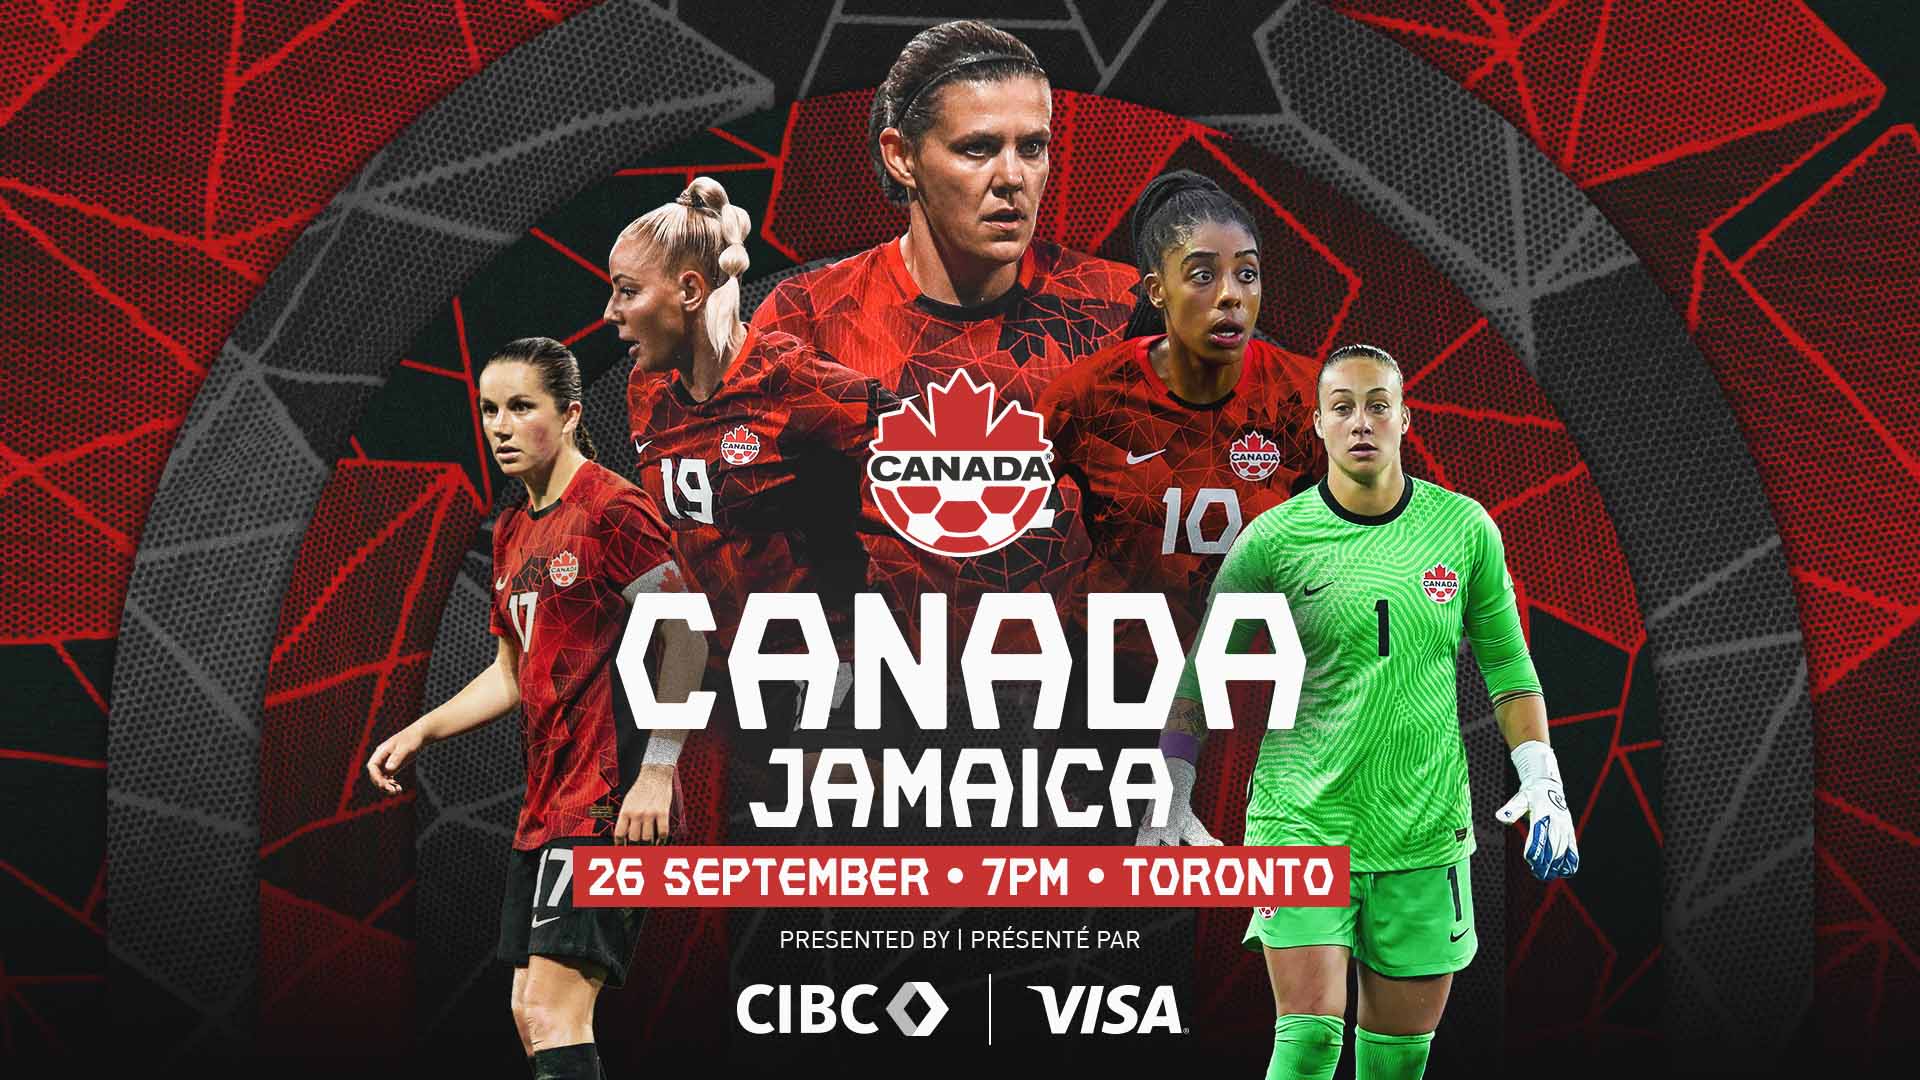 Le Canada accueillera un match crucial de qualification olympique pour